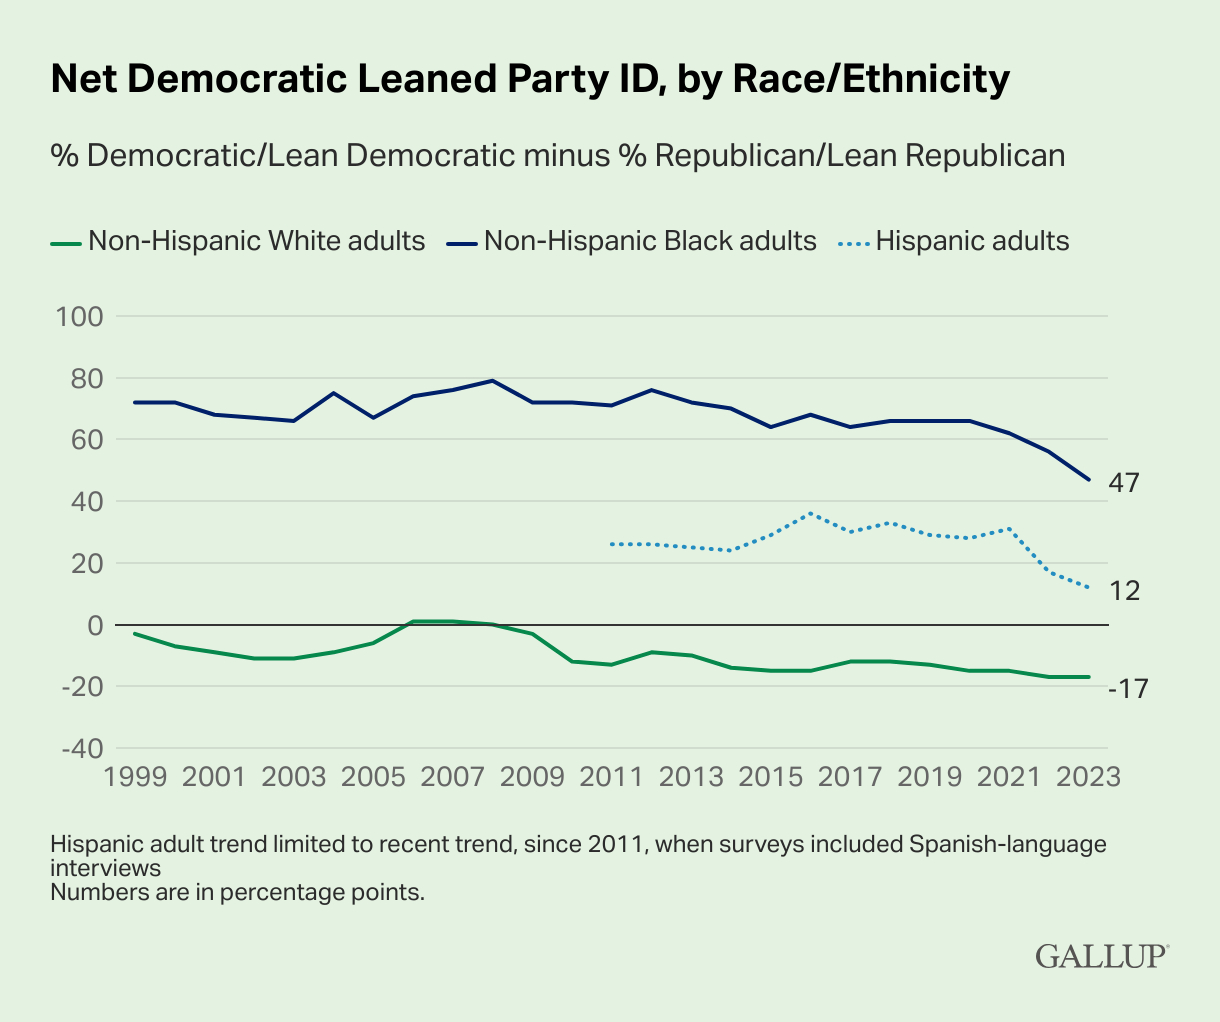 Identificación neta o tendencia hacia el Partido Demócrata, por raza y etnia